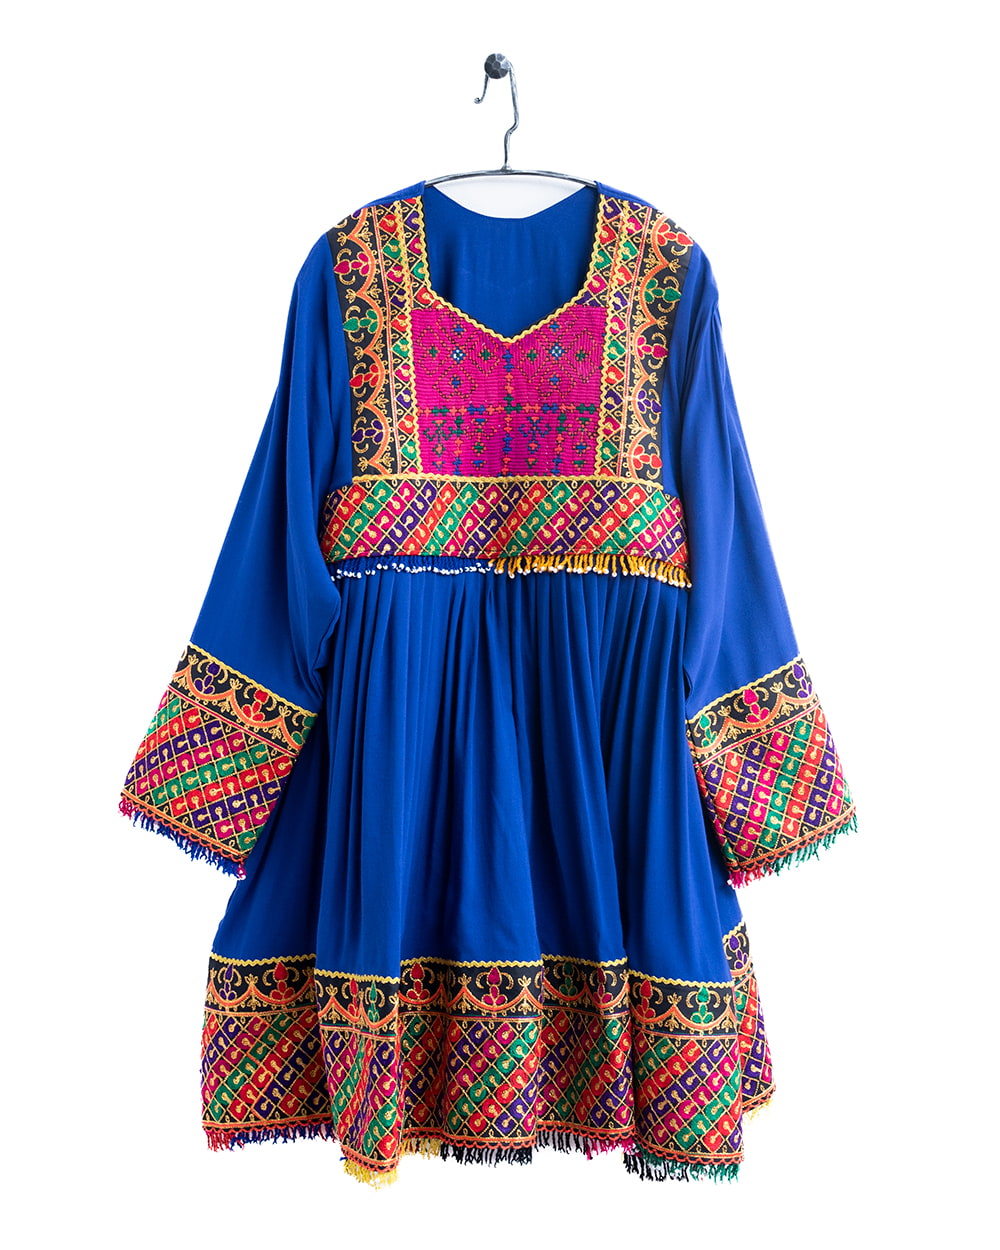 全て1点もの】 パシュトゥーン族の伝統衣装 カミーズドレス 【青】 の通販[送料無料]